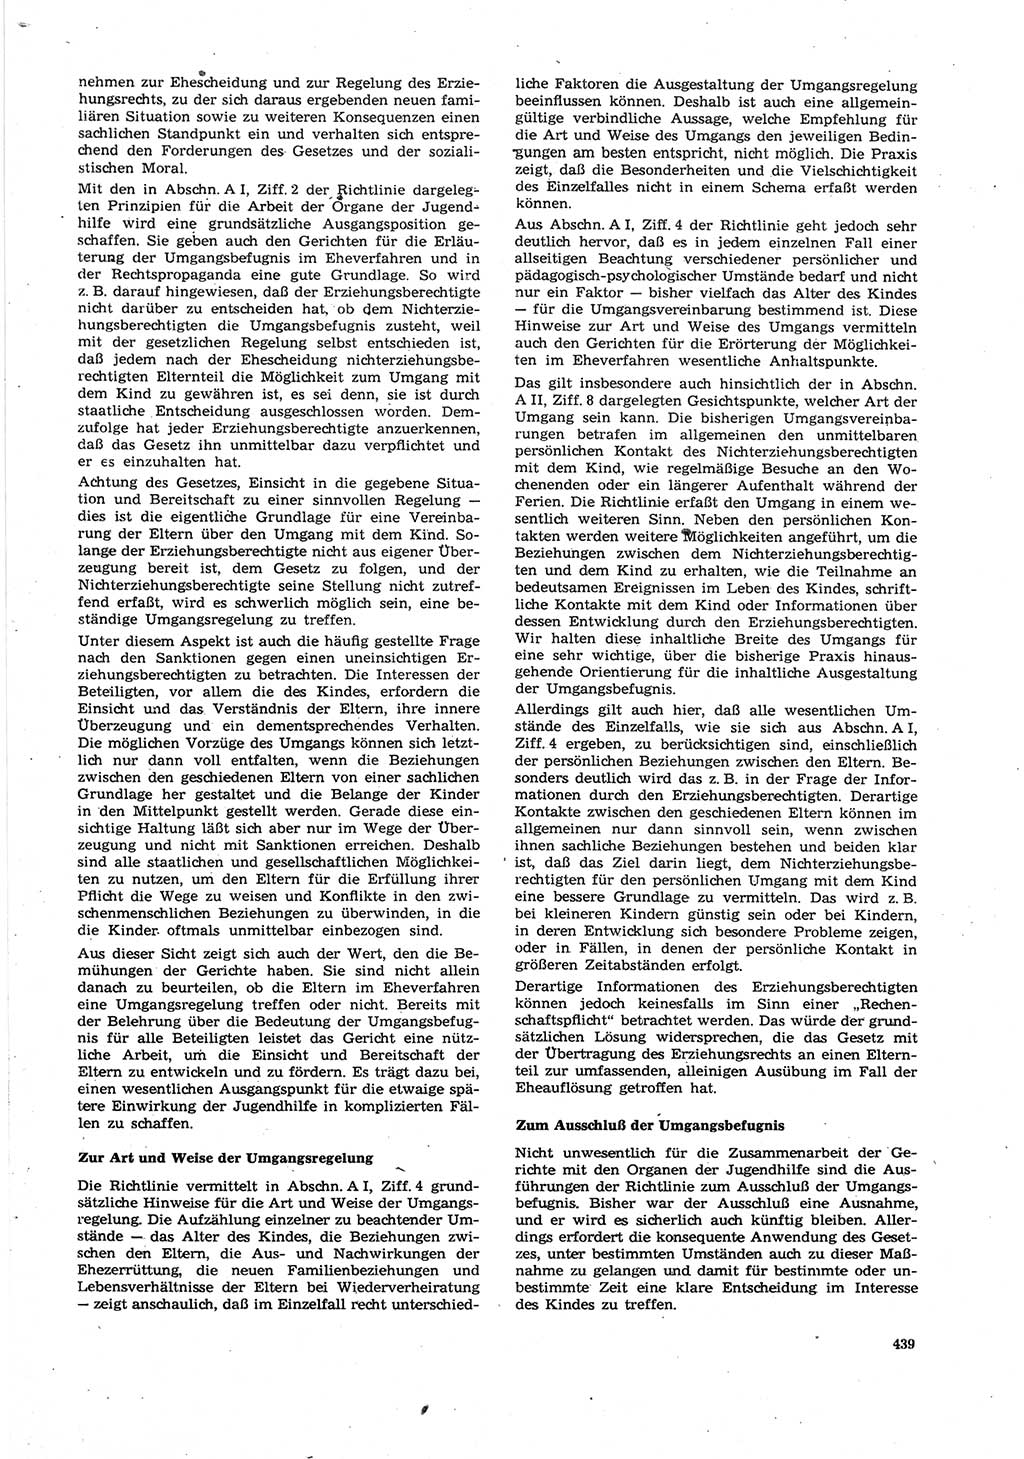 Neue Justiz (NJ), Zeitschrift für Recht und Rechtswissenschaft [Deutsche Demokratische Republik (DDR)], 27. Jahrgang 1973, Seite 439 (NJ DDR 1973, S. 439)